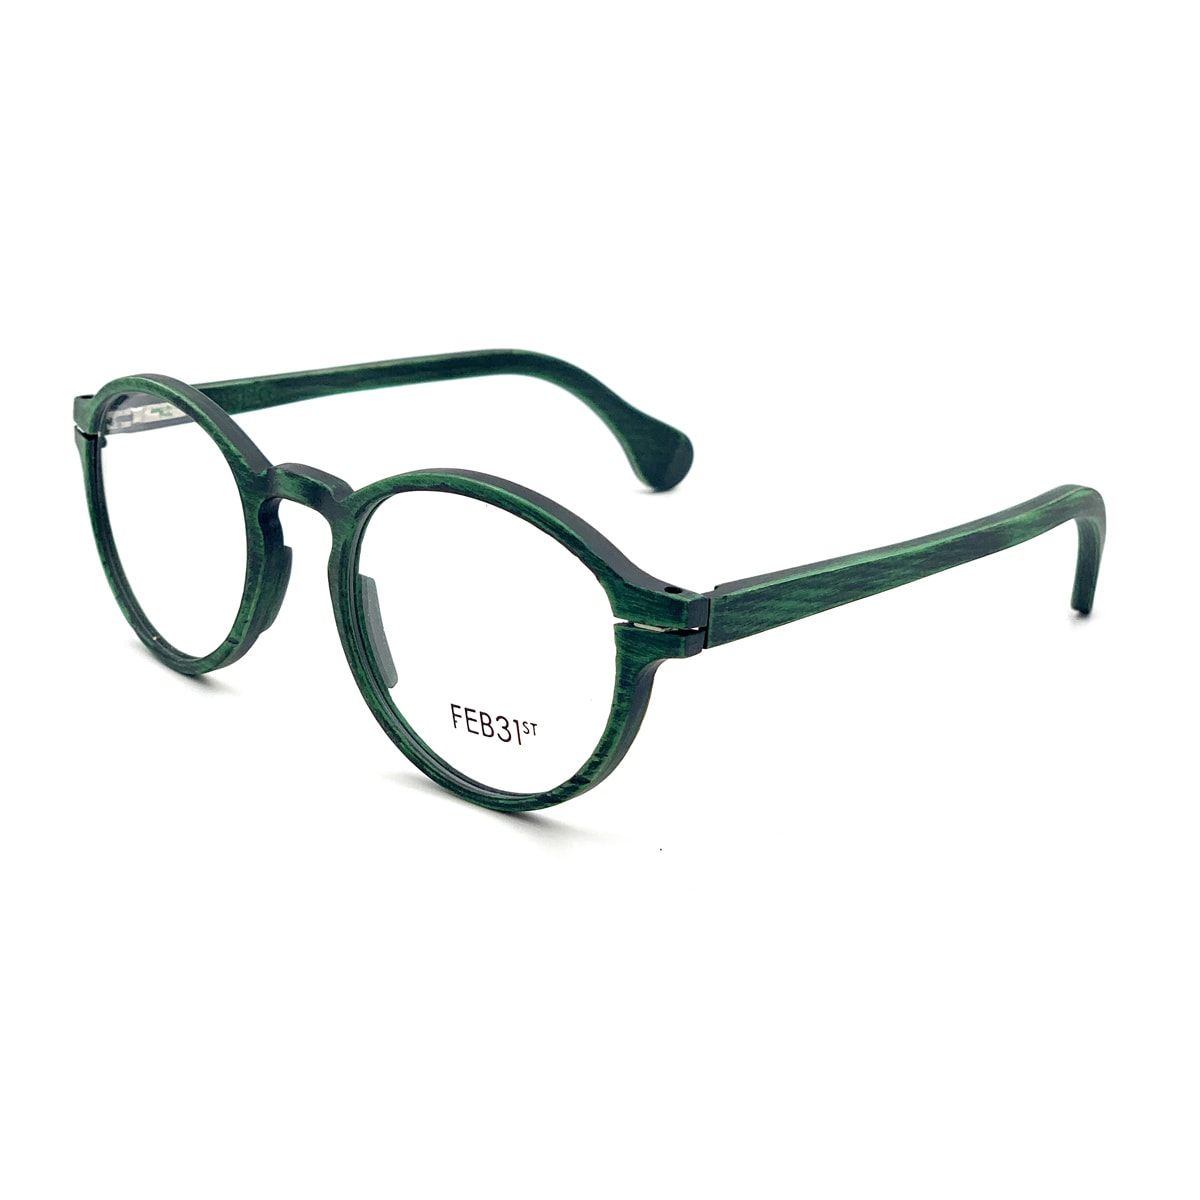 Feb31st Henry Verde Glasses